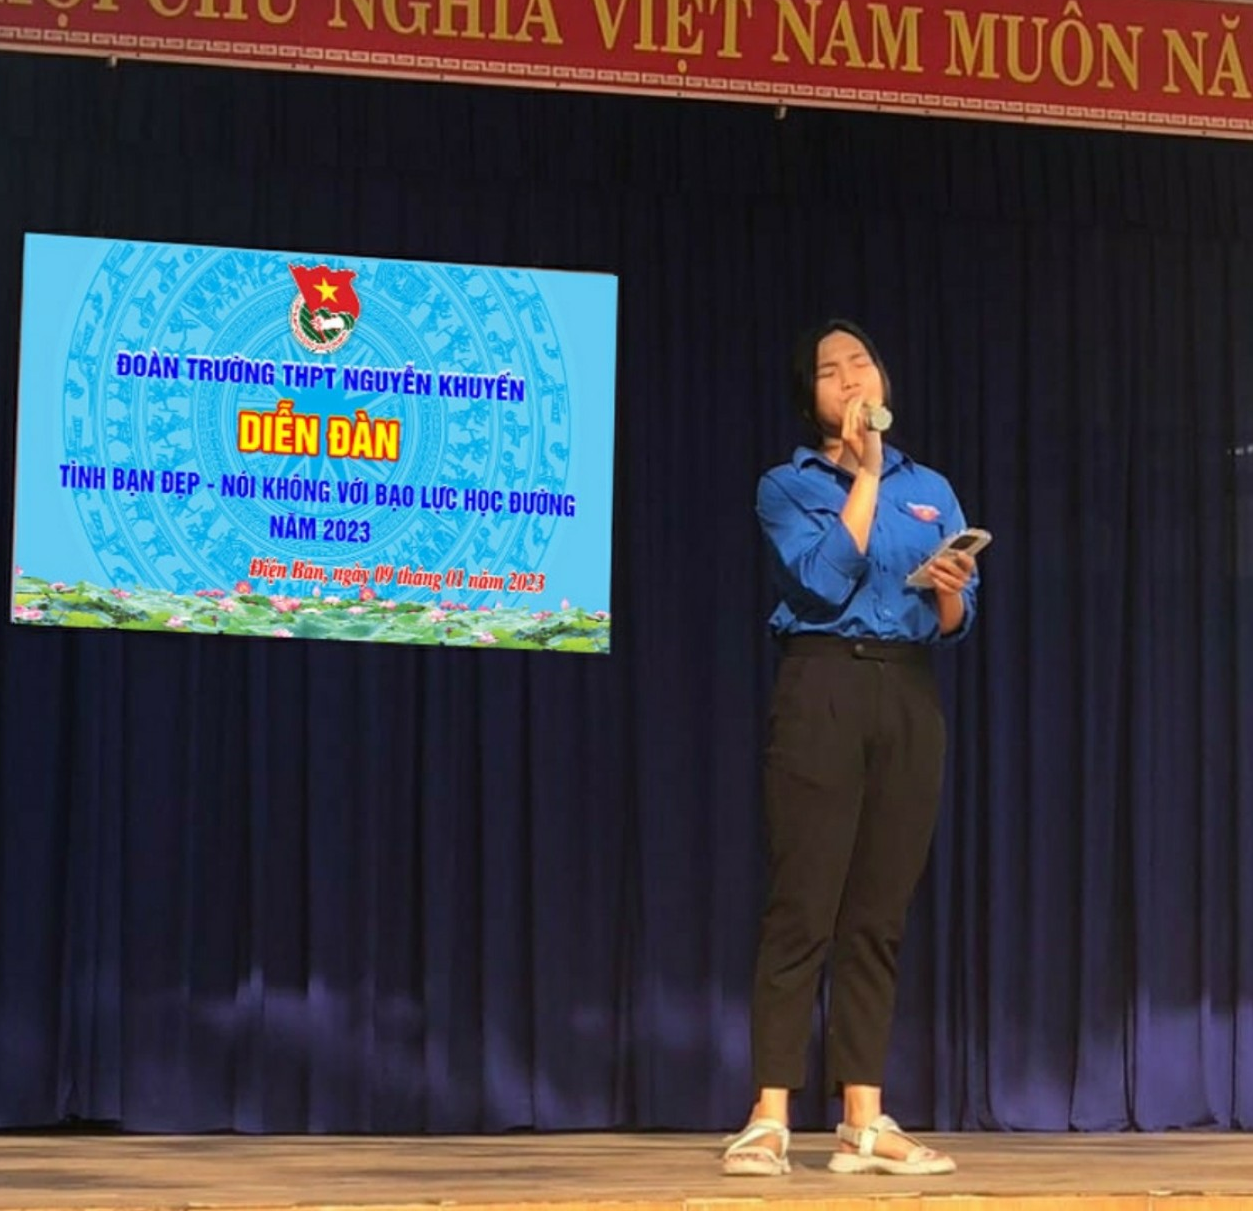 Đoàn Trường THPT Nguyễn Khuyến tổ chức Diễn đàn tình bạn đẹp nói không với bạo lực học đường năm 2023